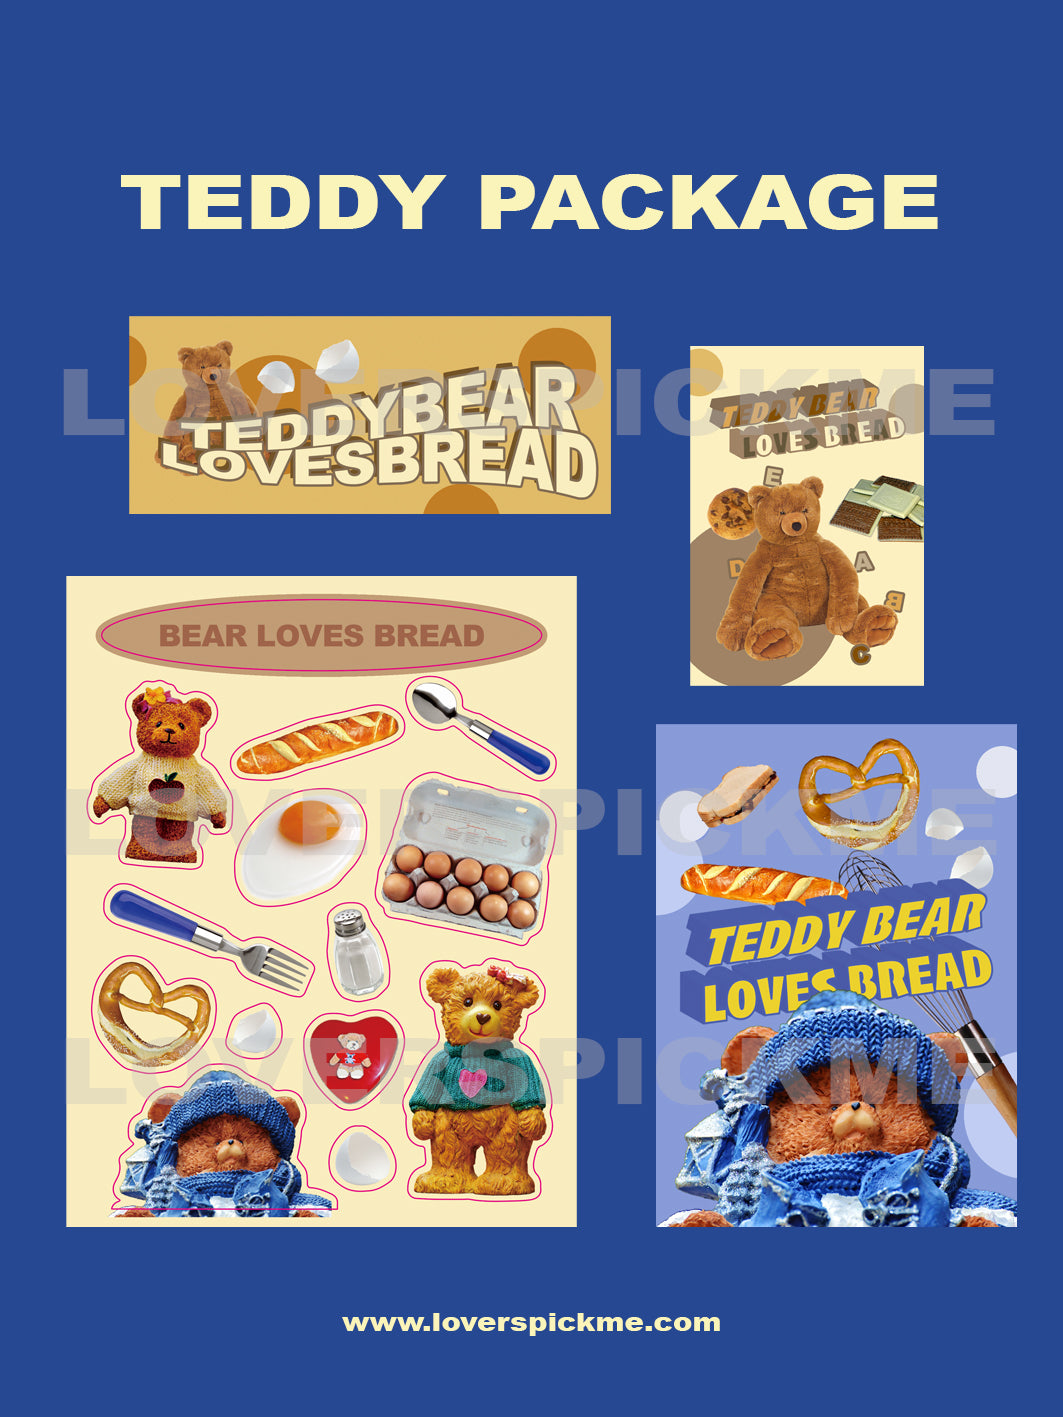 LOVERSPICKME TeddyPackage